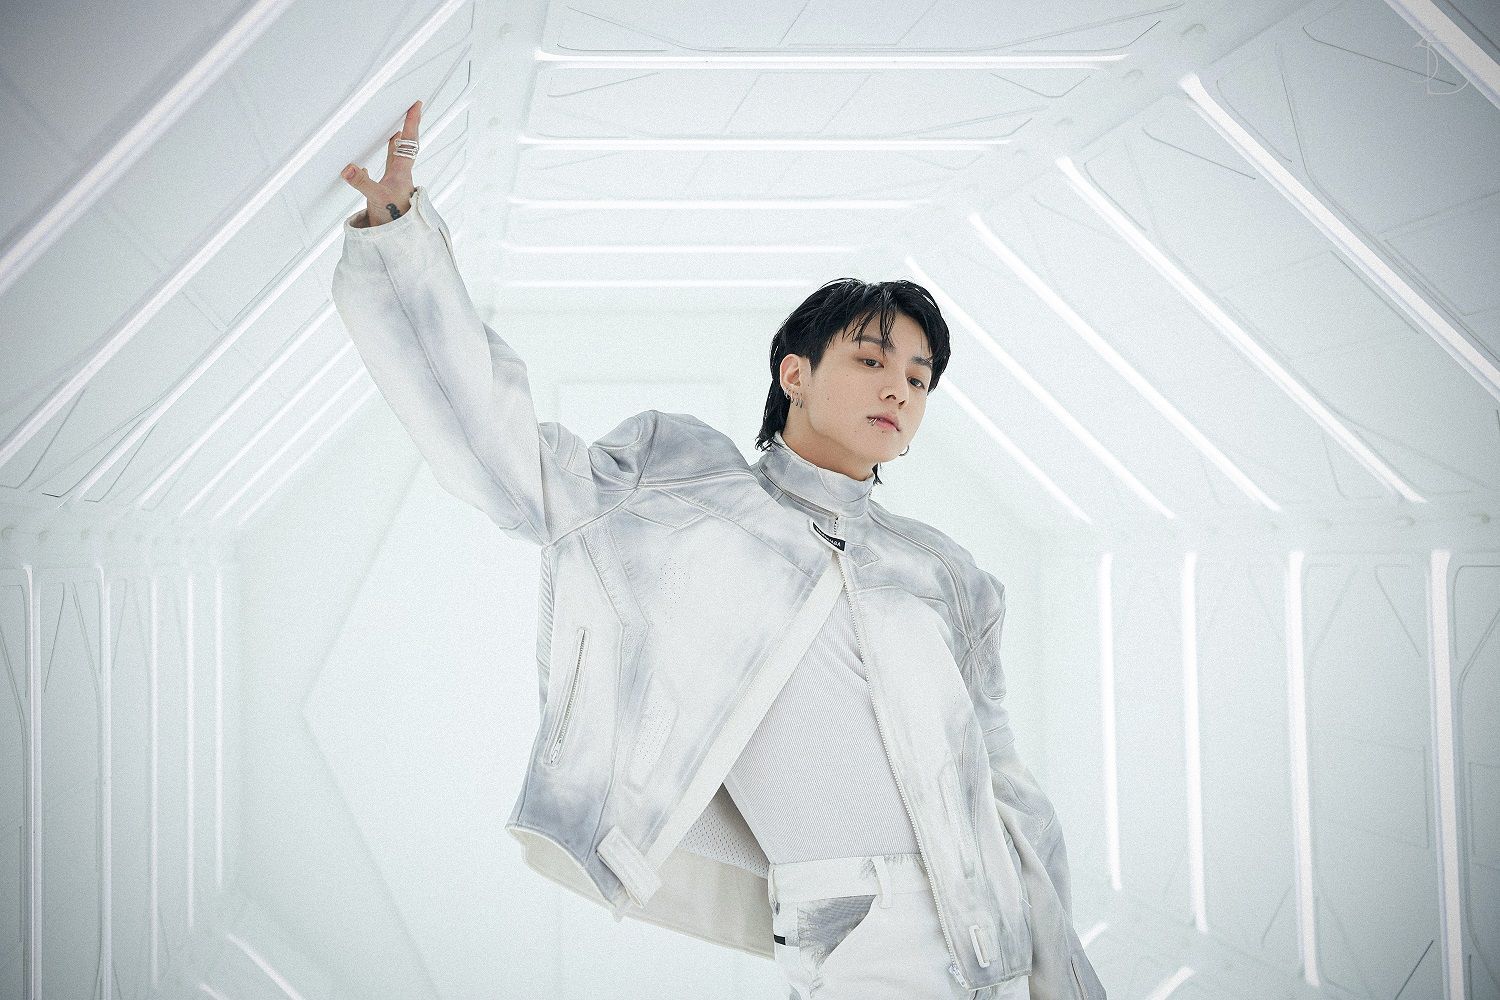 10 records Jung Kook broke ahead of GOLDEN album launch